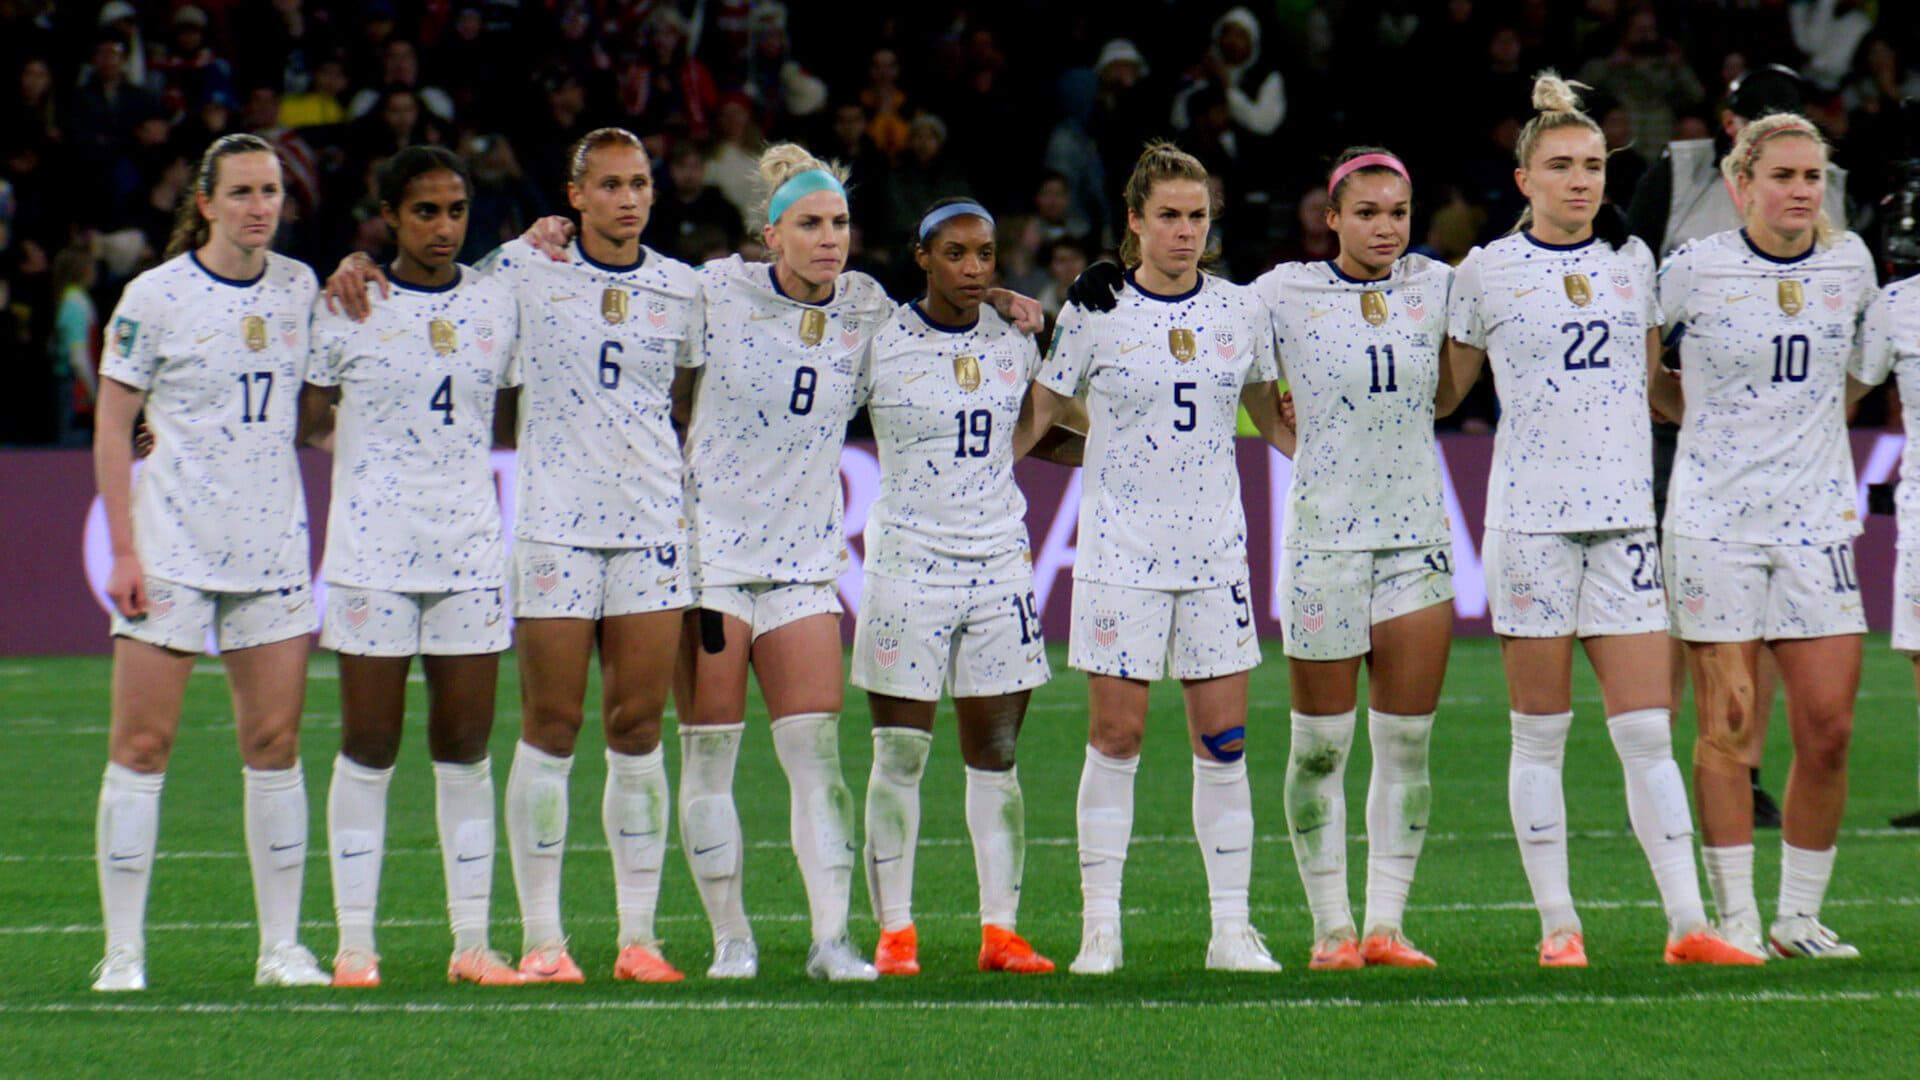 Under Pressure: The U.S. Women's World Cup Team background